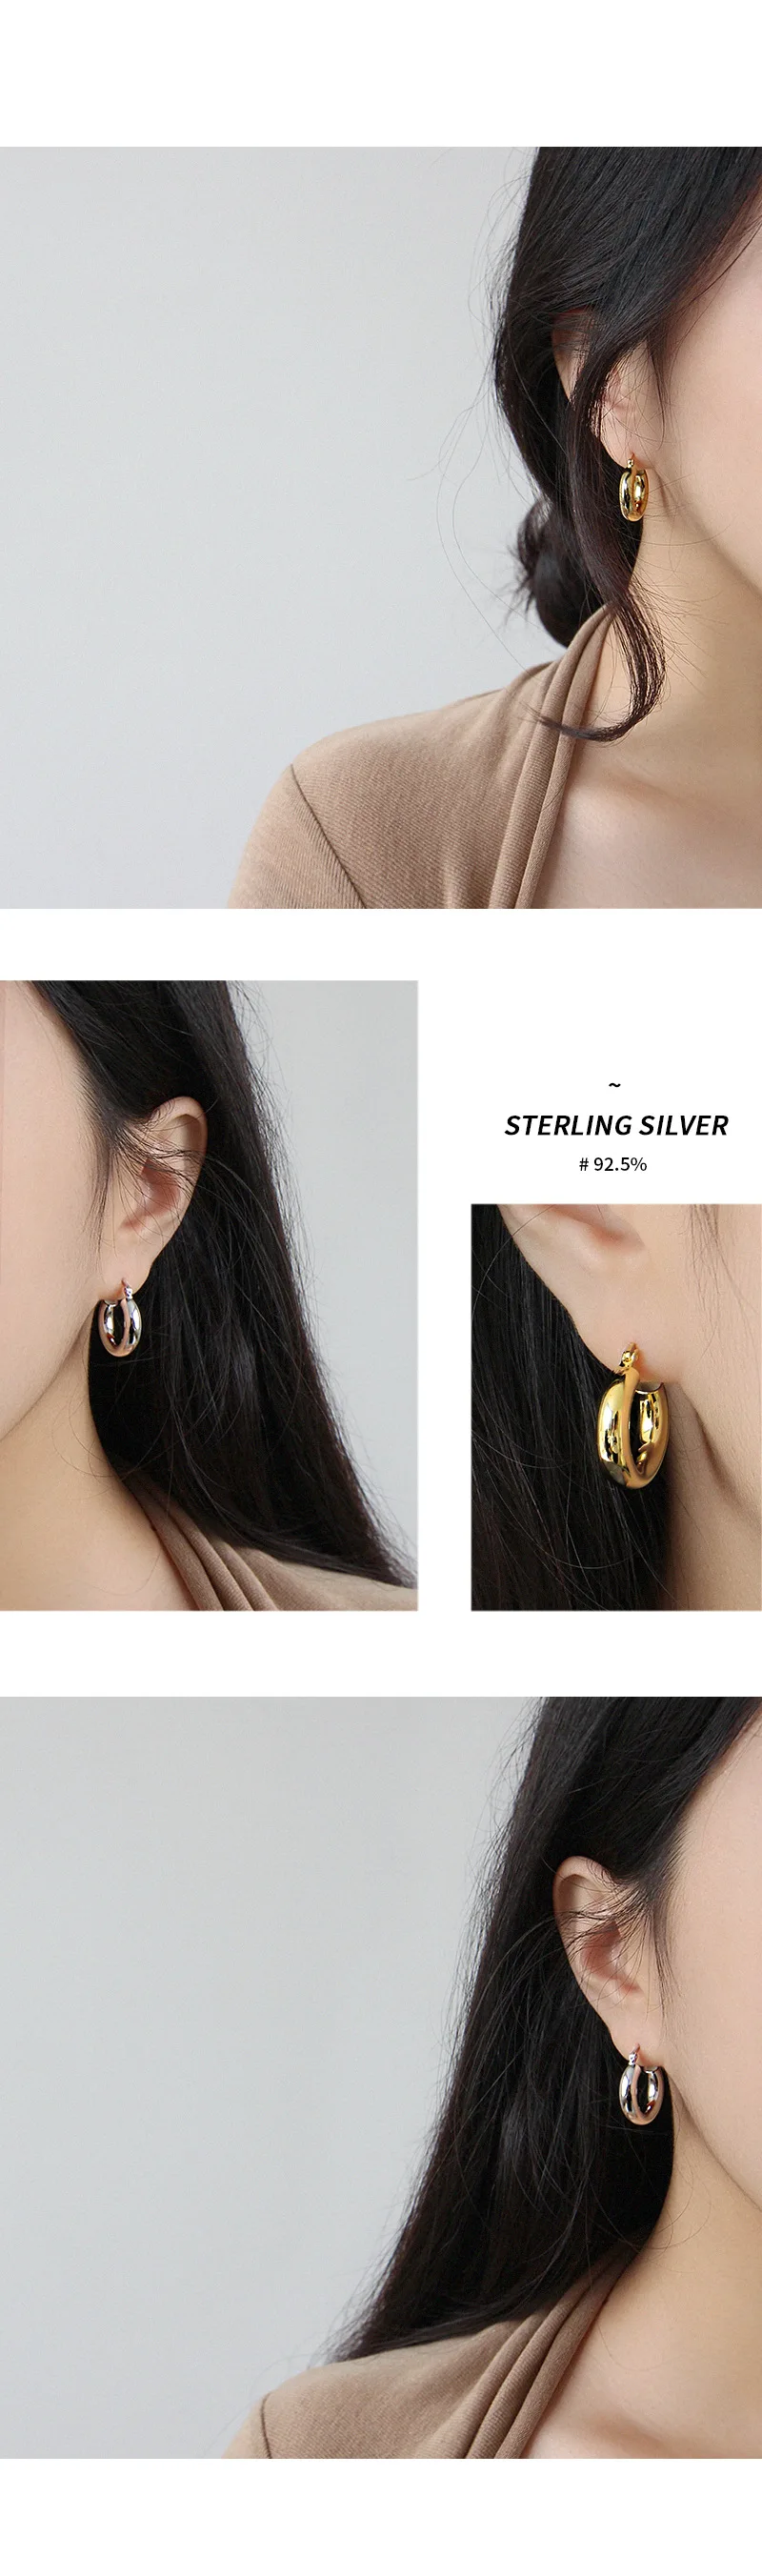 Корея Новый стиль 100% 925 Серебряные серьги Модные лаконичные Нежный Круглый Стад Серьги, изящные украшения для женщин